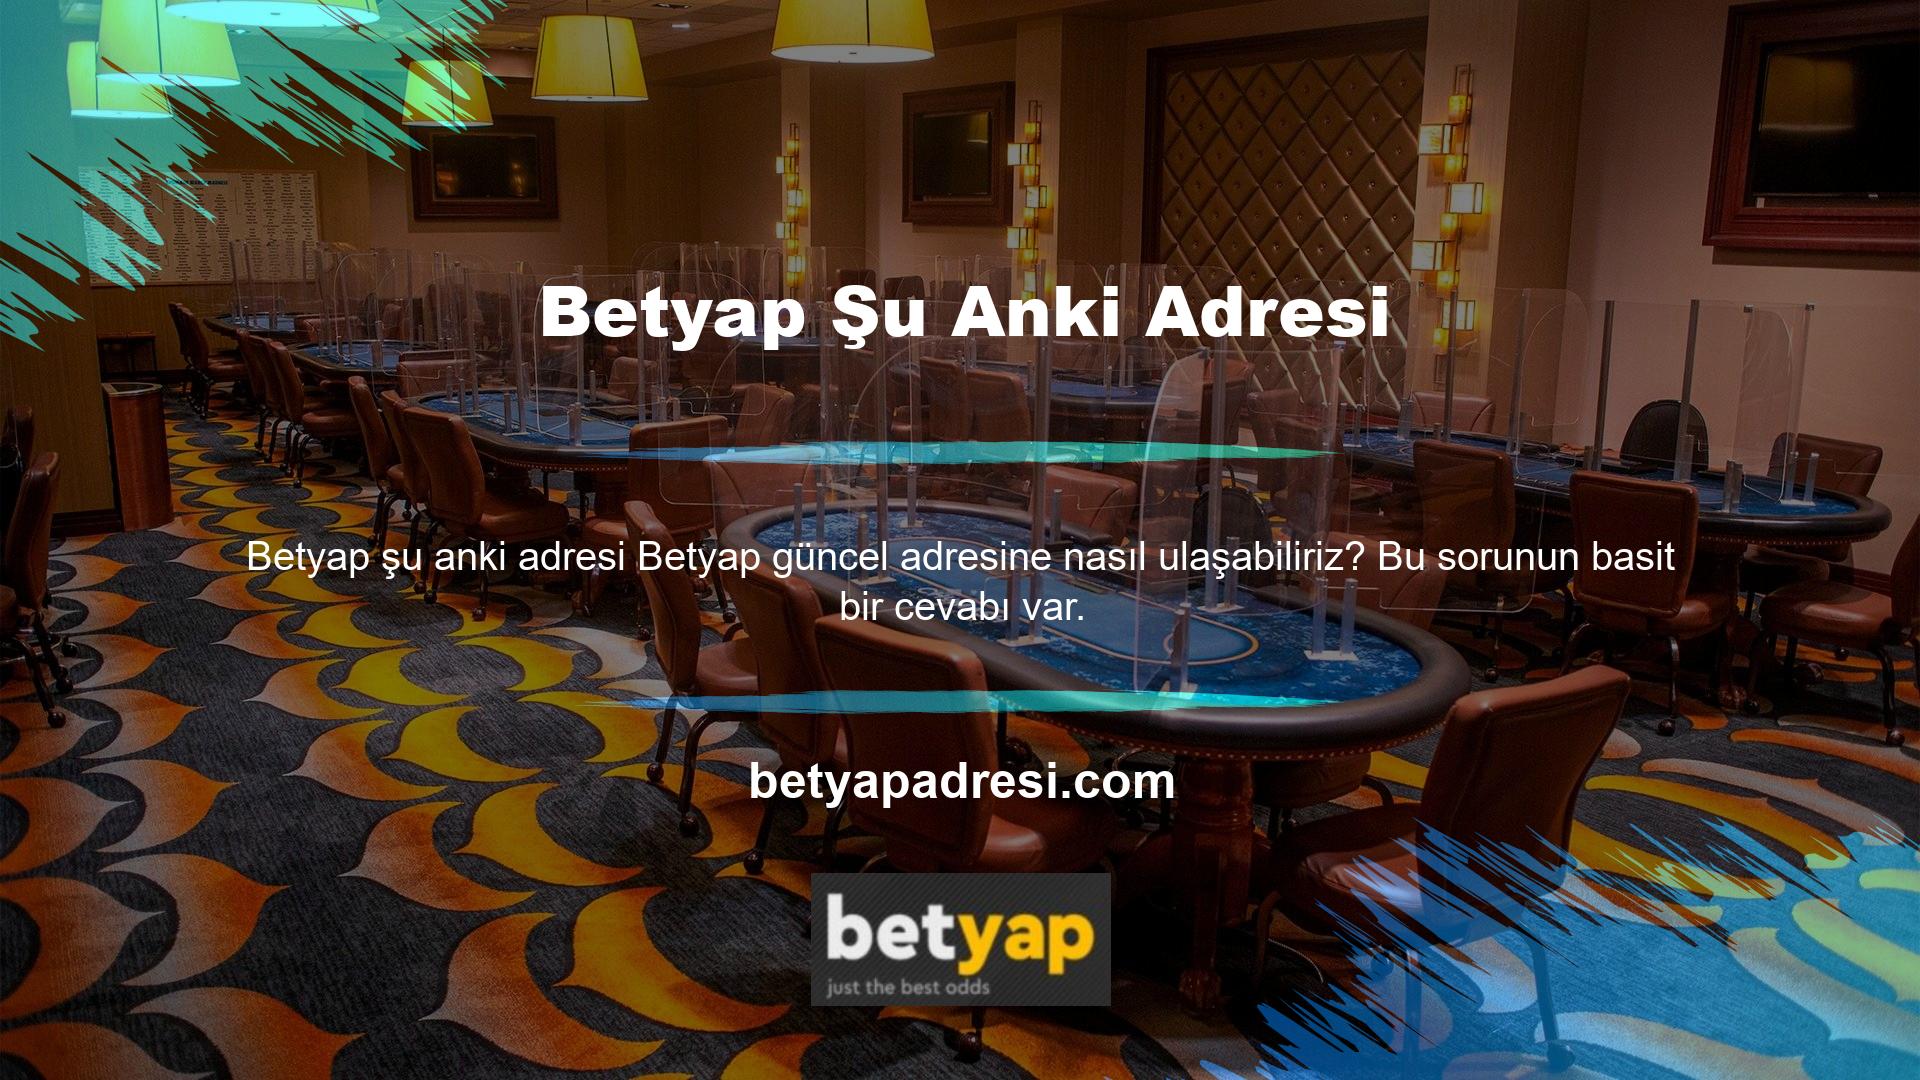 Öncelikle Betyap sosyal medya hesaplarını takip etmenizi ve bahis platformları ile casinolara bağlanmanızı tavsiye ederiz